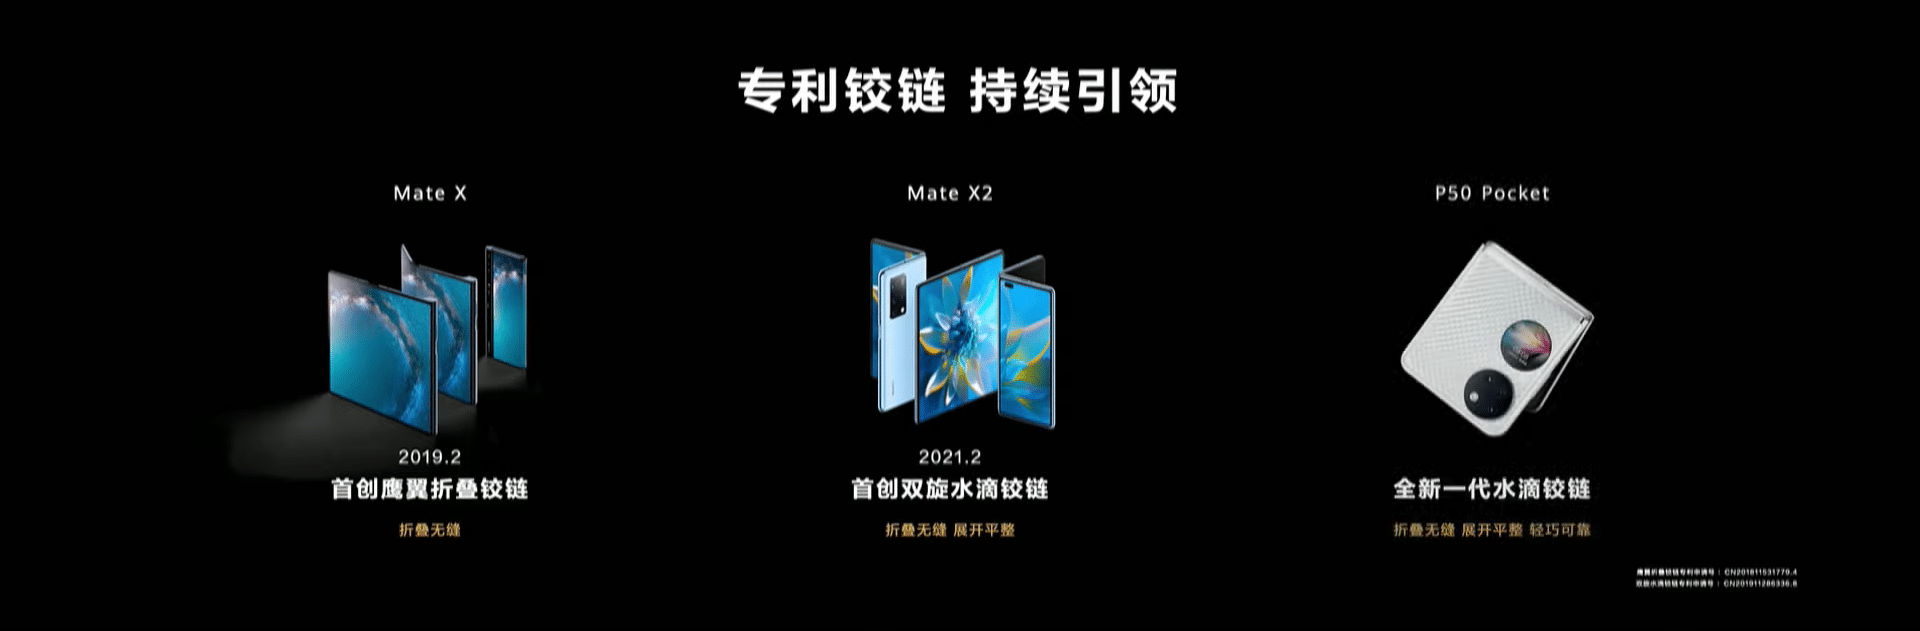 يتميز P50 Pocket القابل للطي من Huawei بشاشة خارجية دائرية مثالية للإشعارات 6